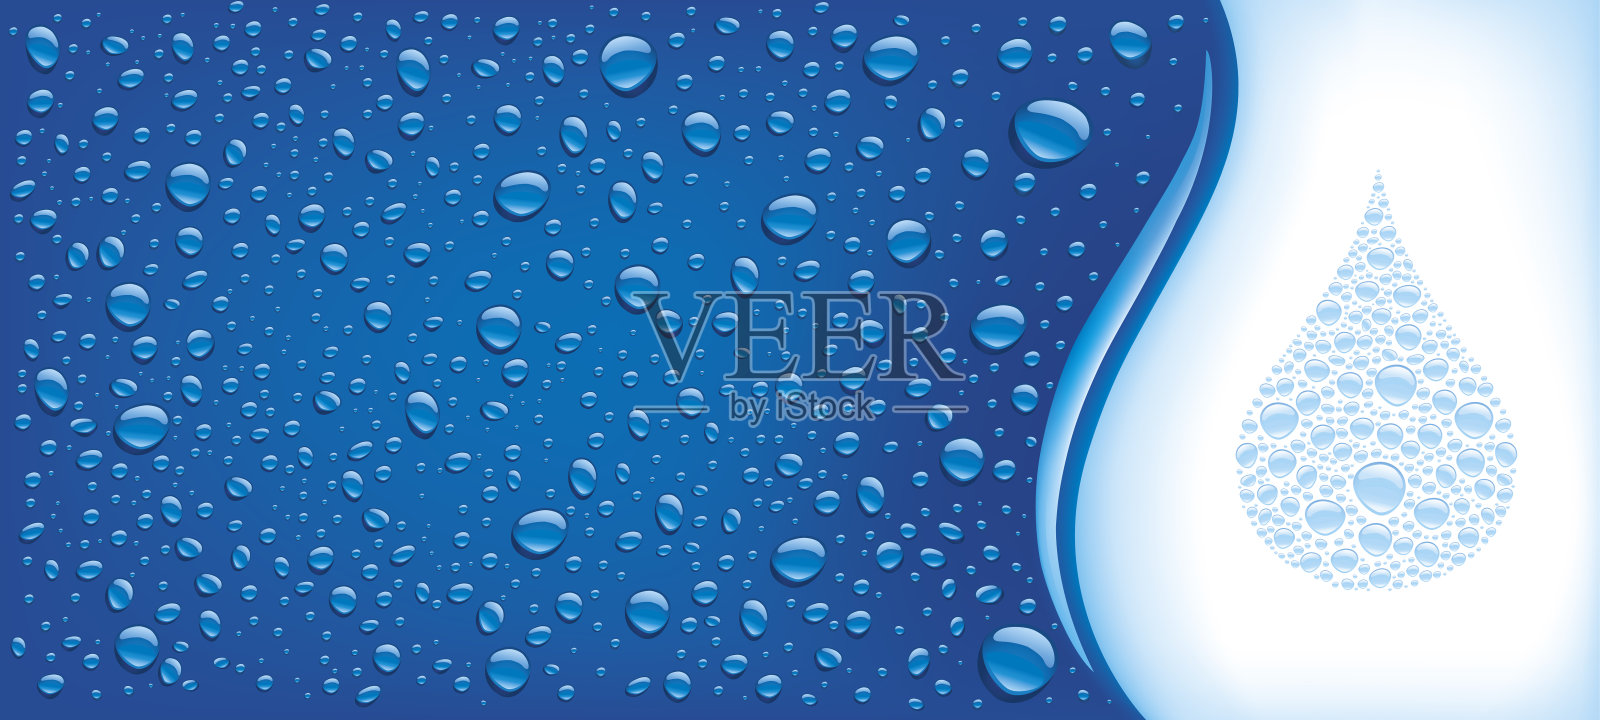 许多水滴在蓝色的背景插画图片素材